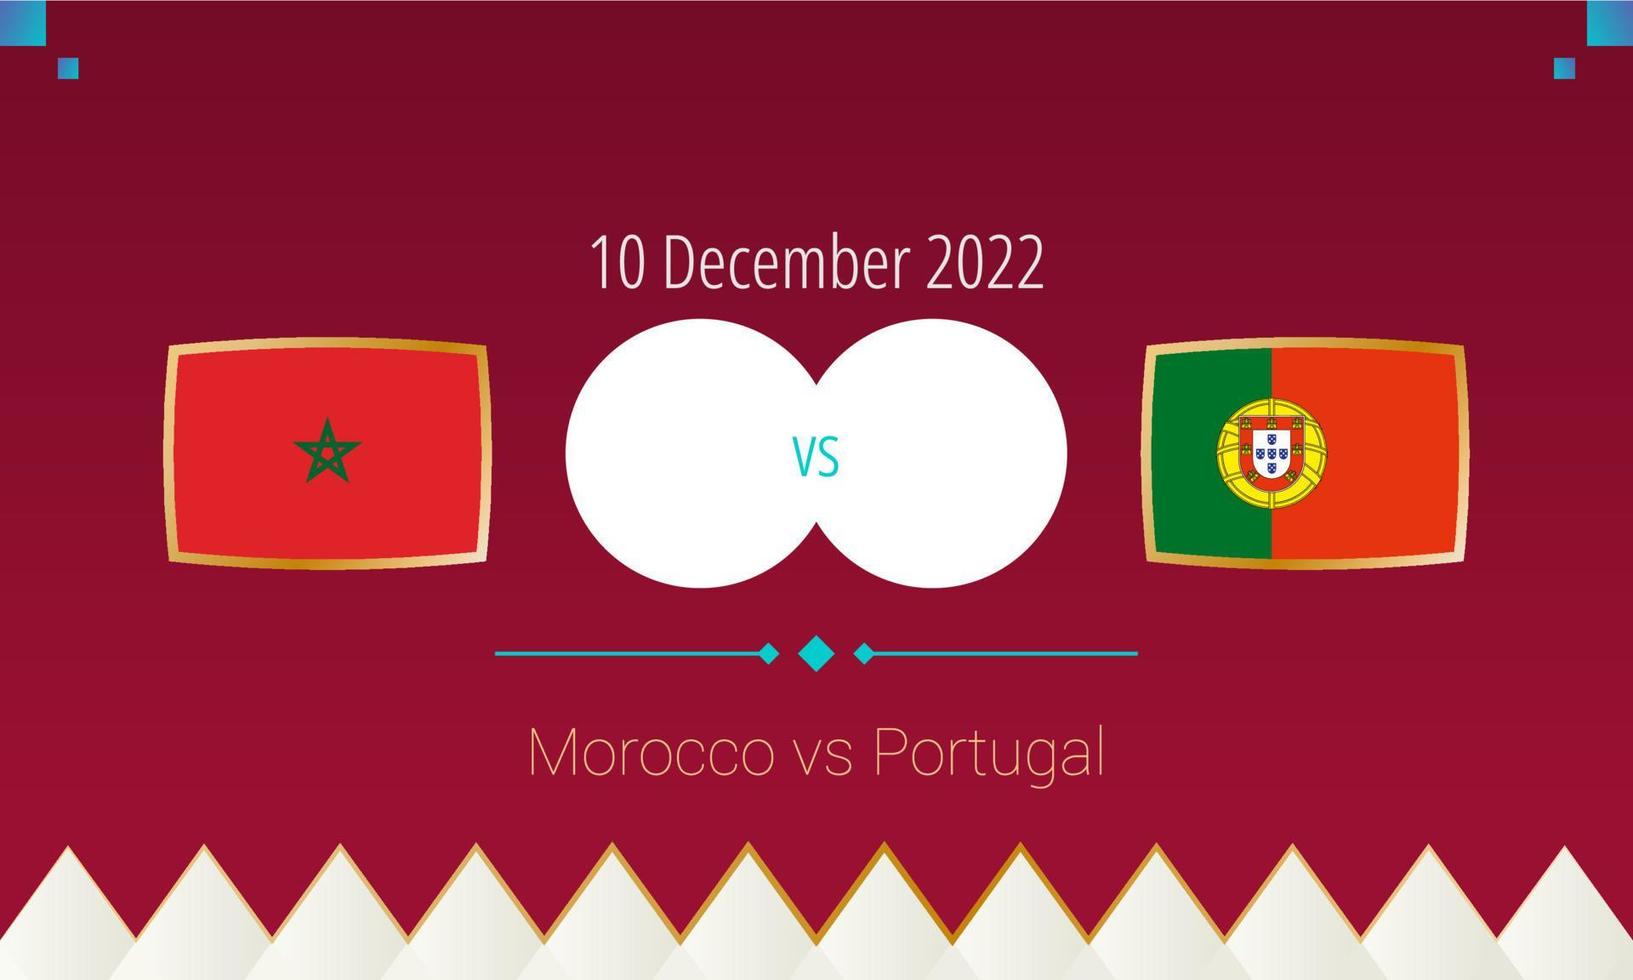 jogo de futebol marrocos x portugal nas quartas de final, competição internacional de futebol 2022. vetor